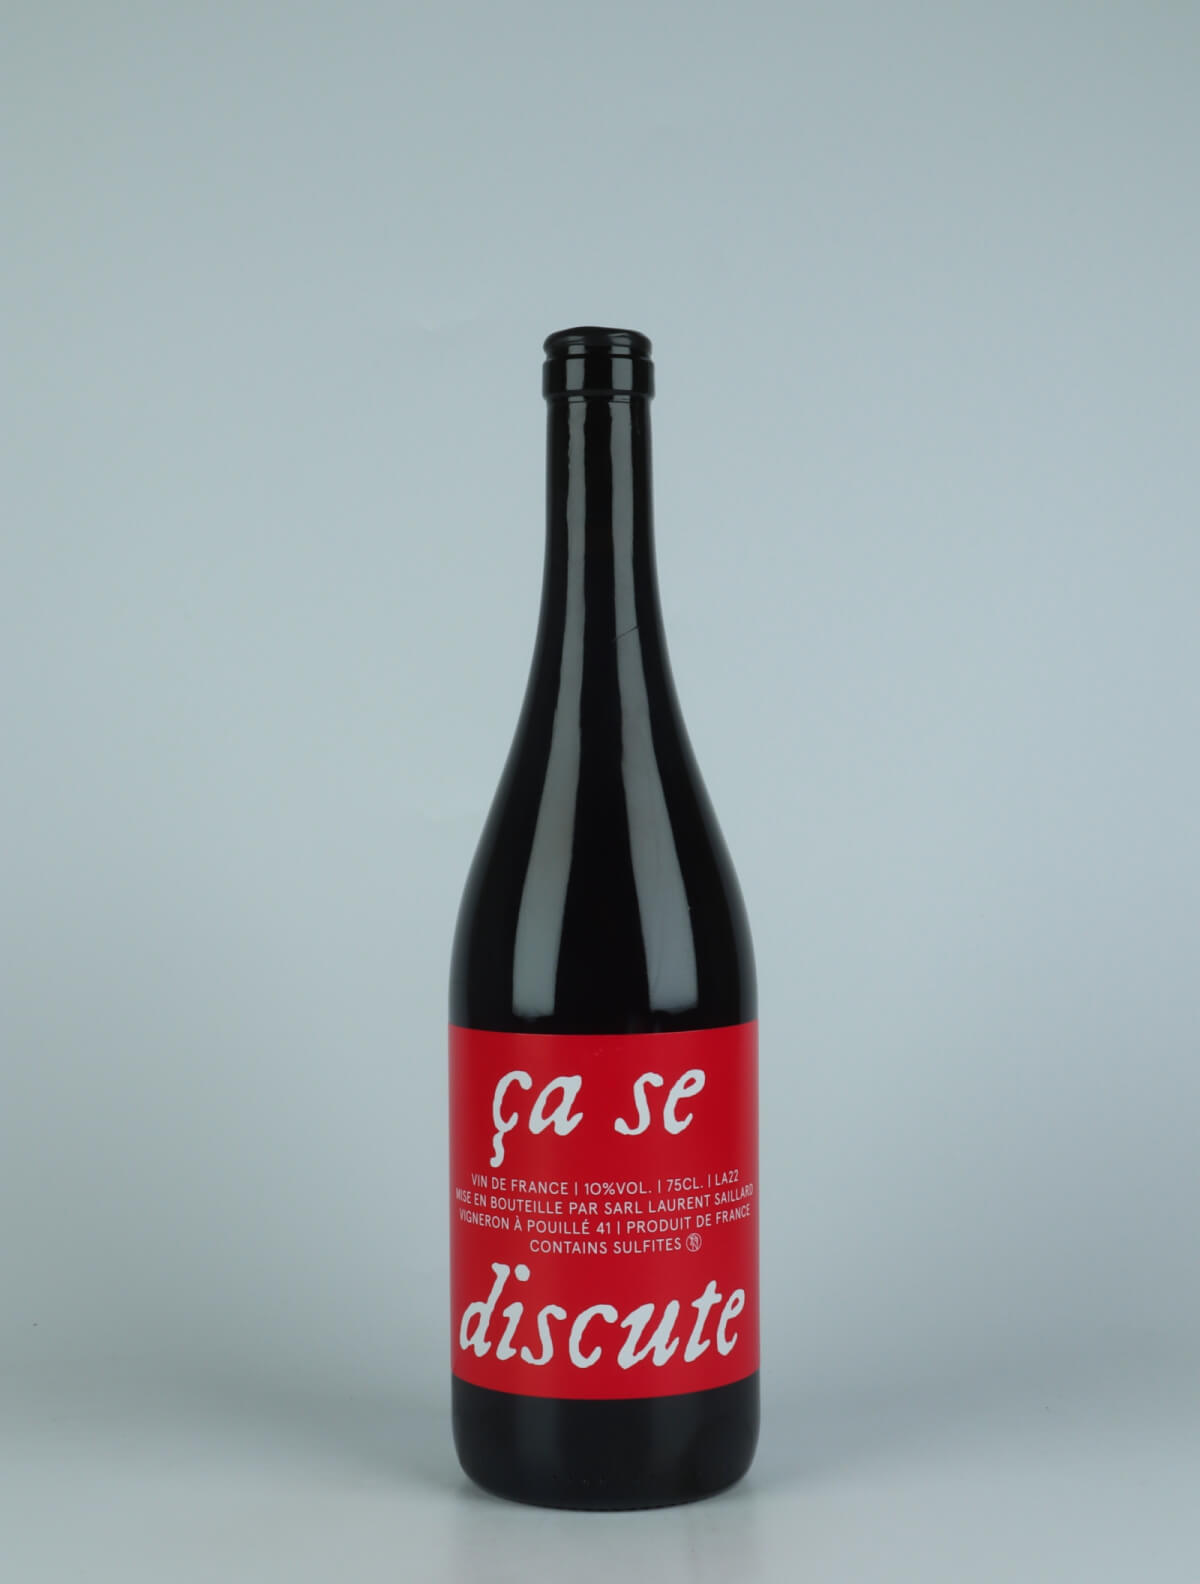 A bottle 2022 Ça se discute Red wine from Laurent Saillard, Loire in France